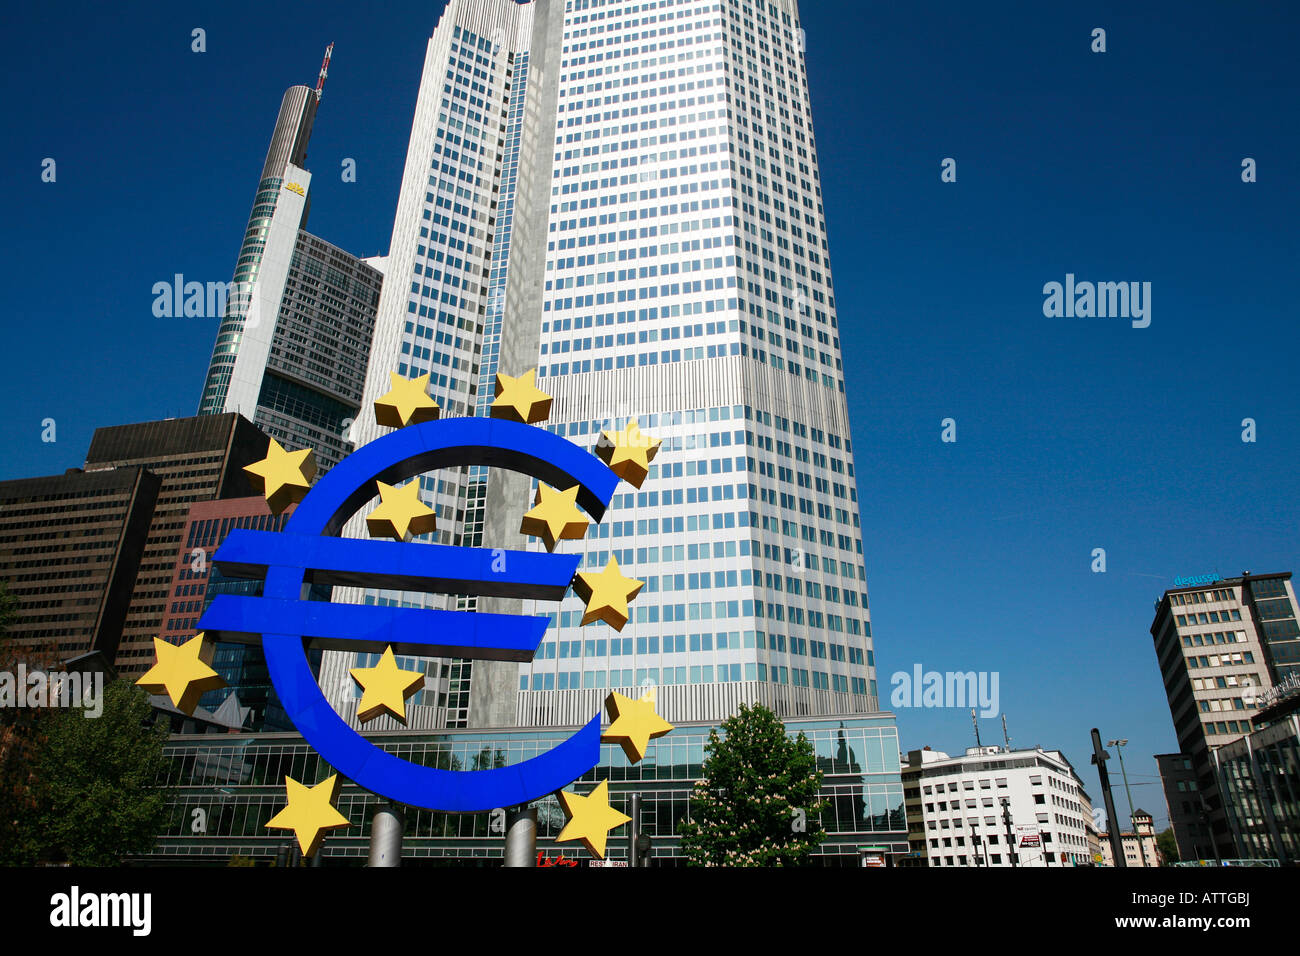 Signo de Euro, el símbolo del euro y del Banco Central Europeo (BCE), Frankfurt am Main, Hessen, Alemania, en Alemania, en Europa, la UE Foto de stock